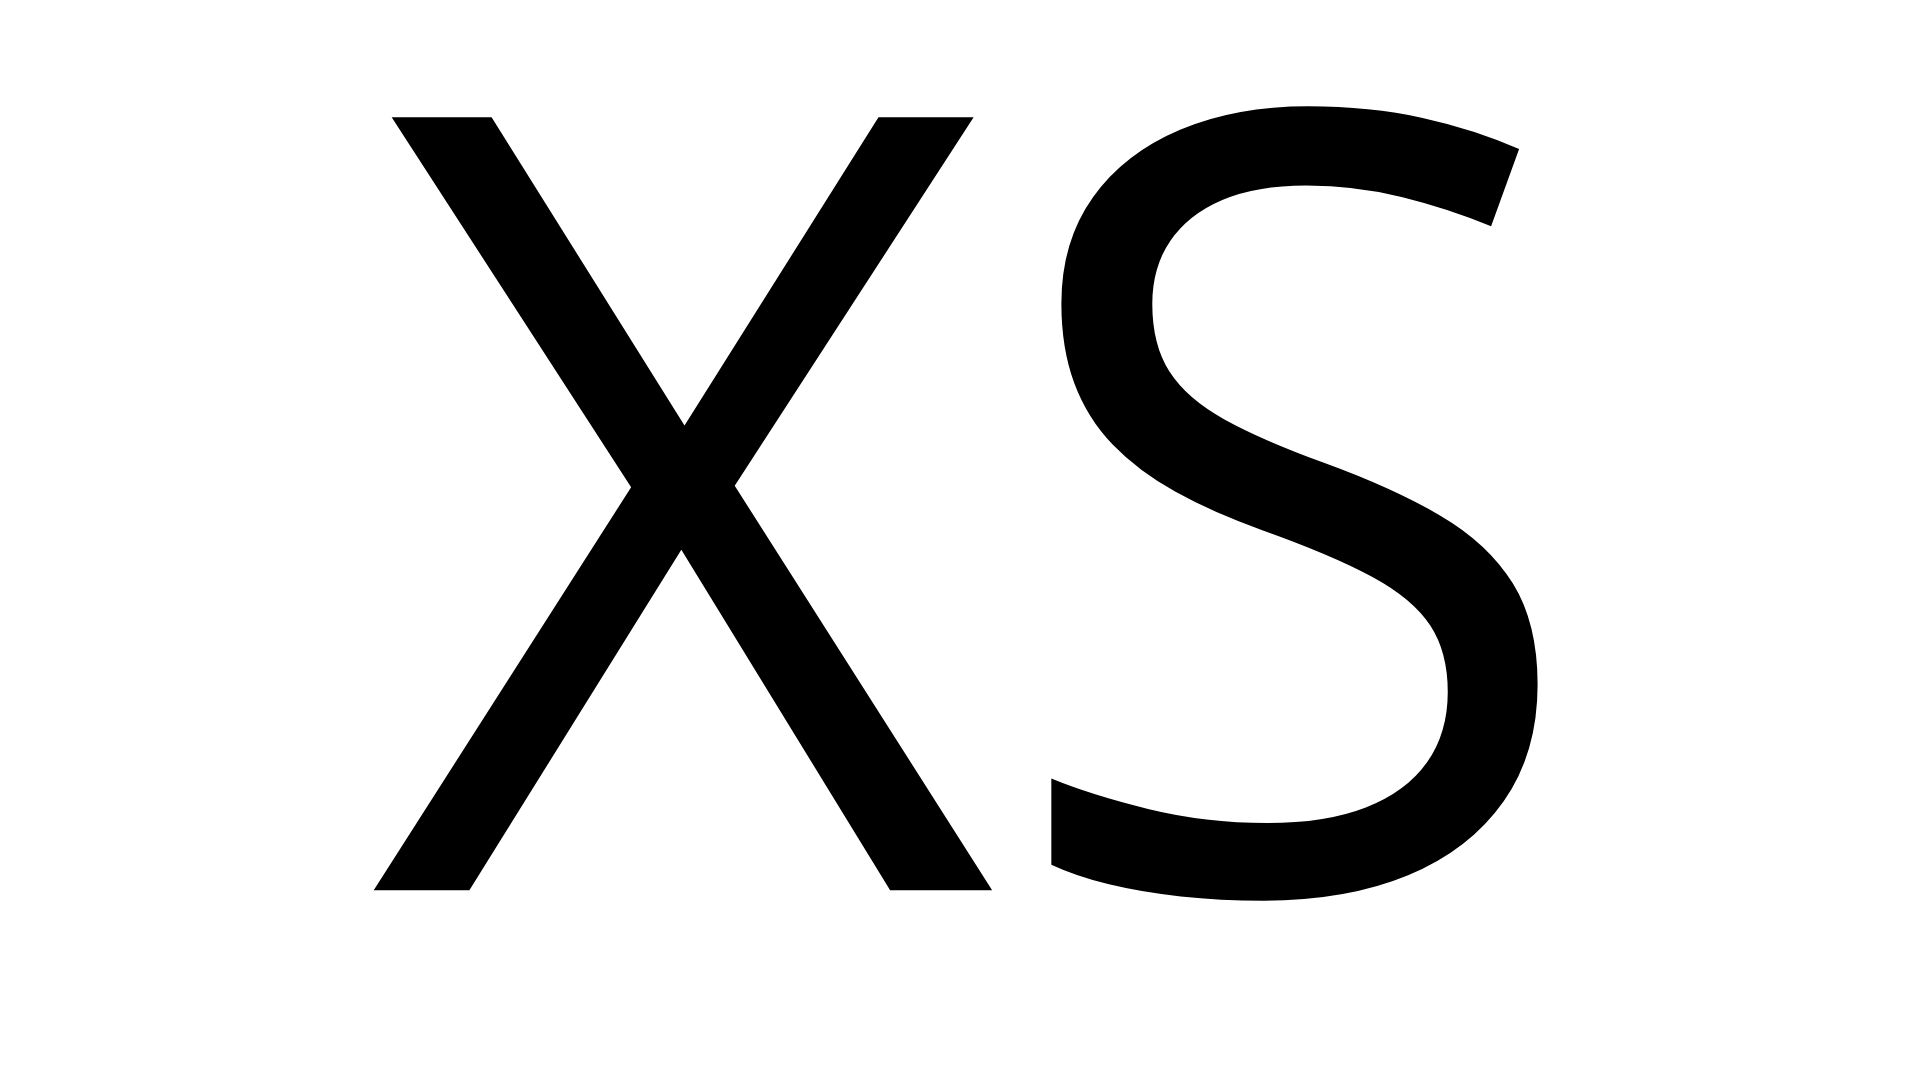 XS